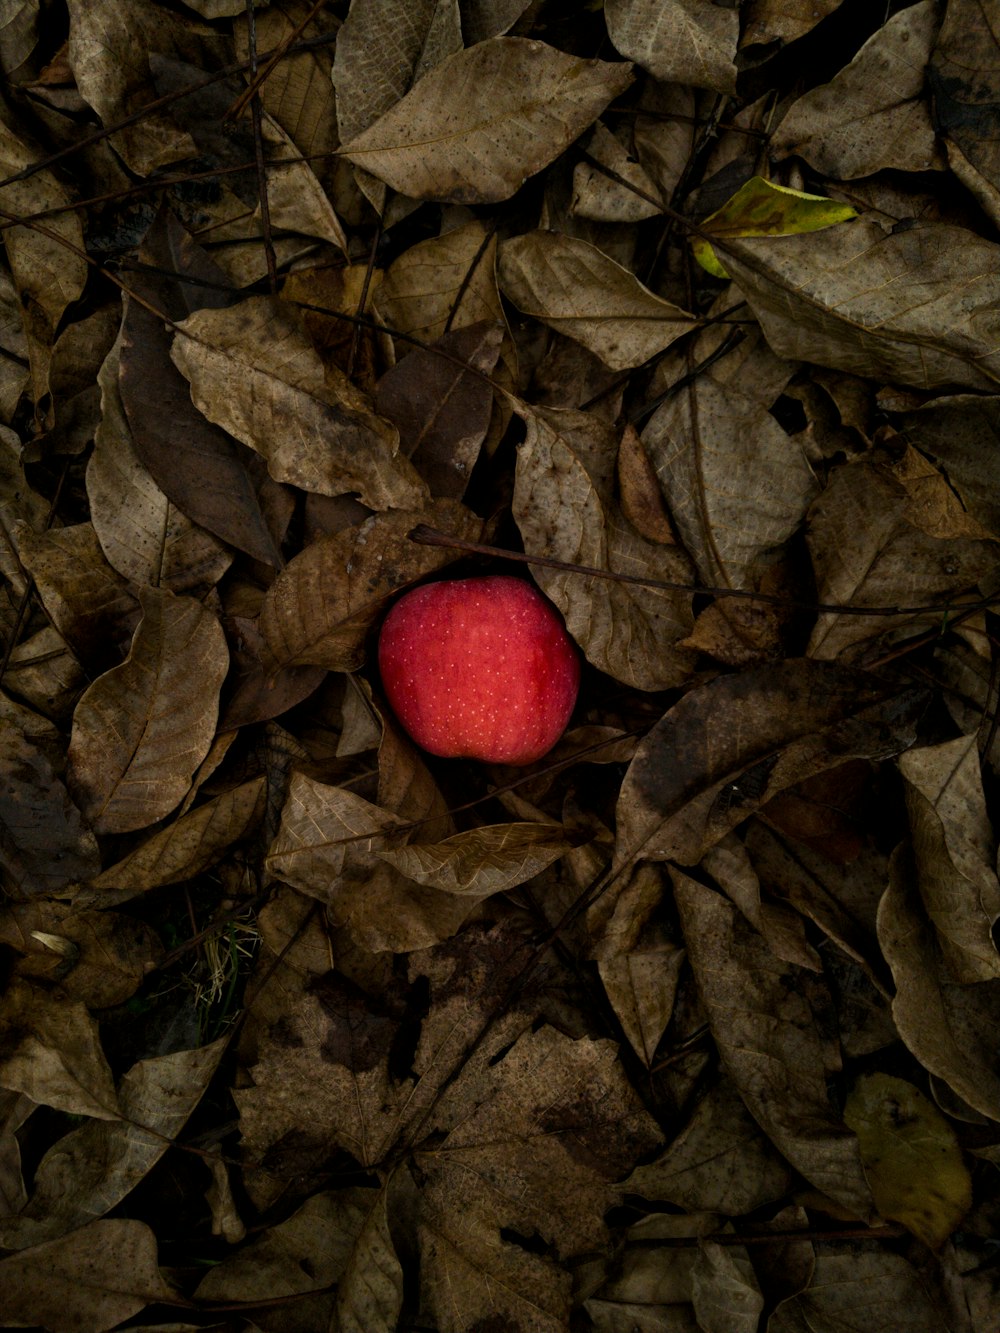 manzana roja sobre hojas secas